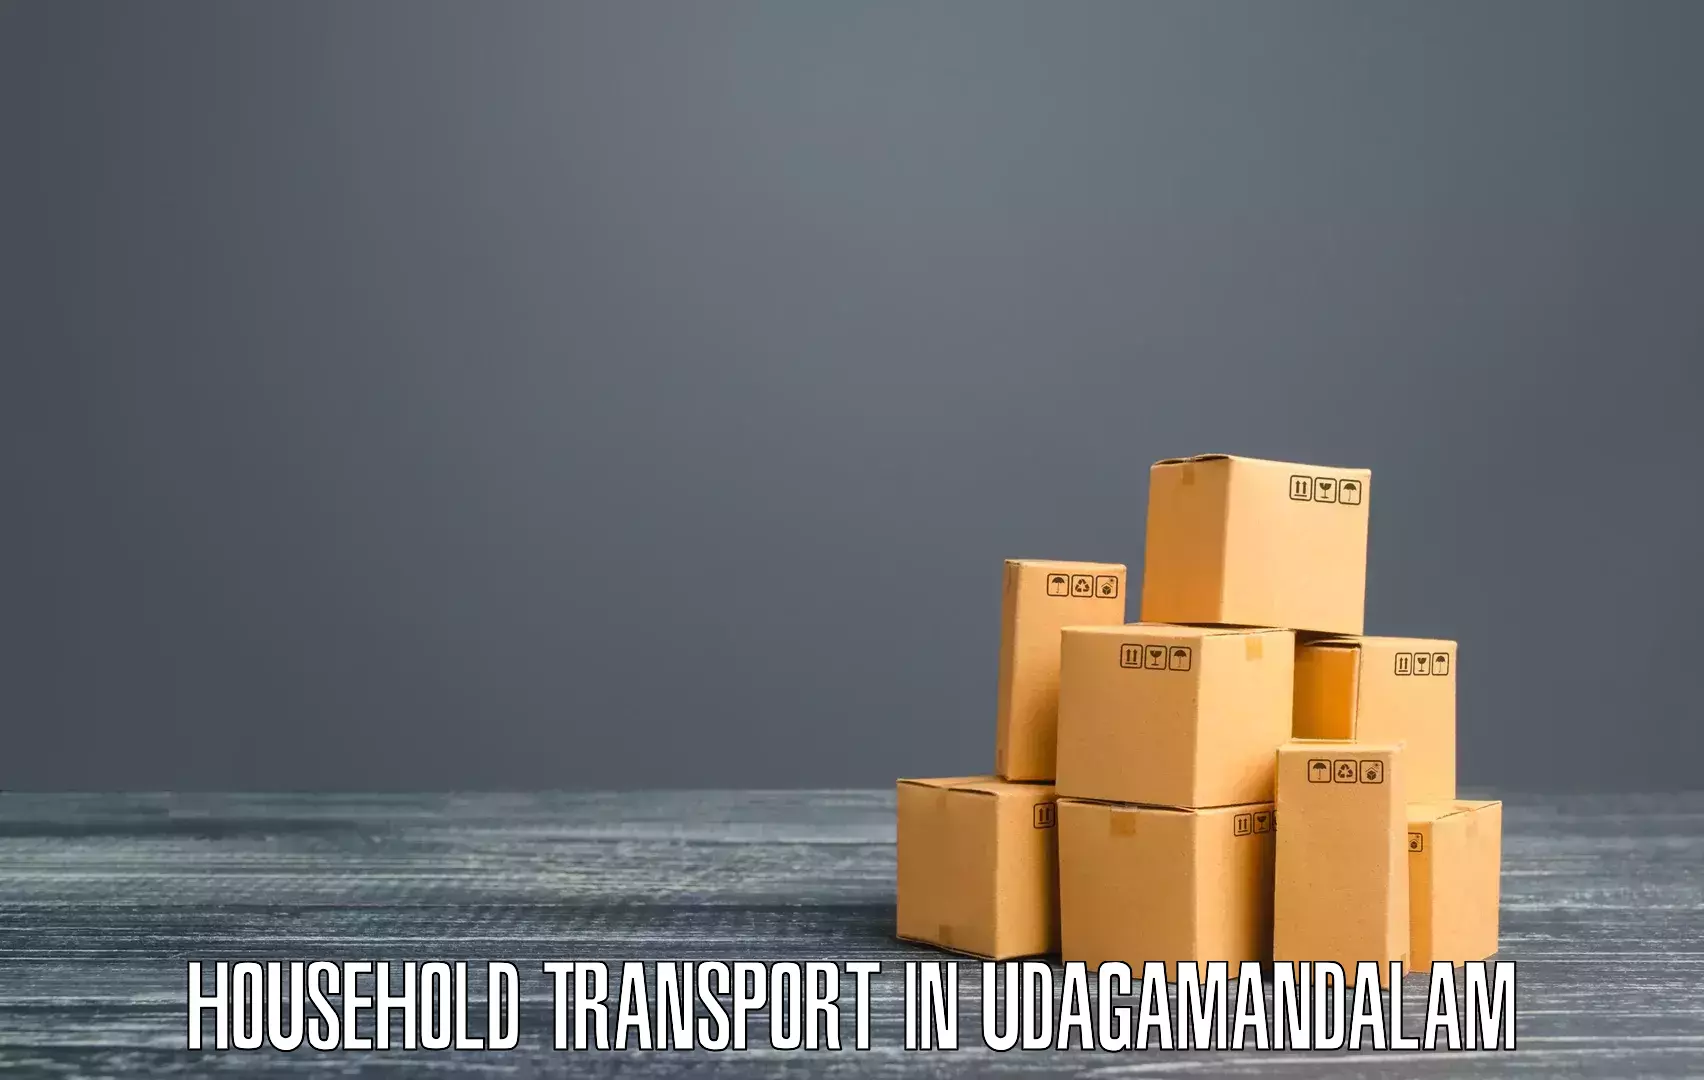 Custom furniture transport in Udagamandalam